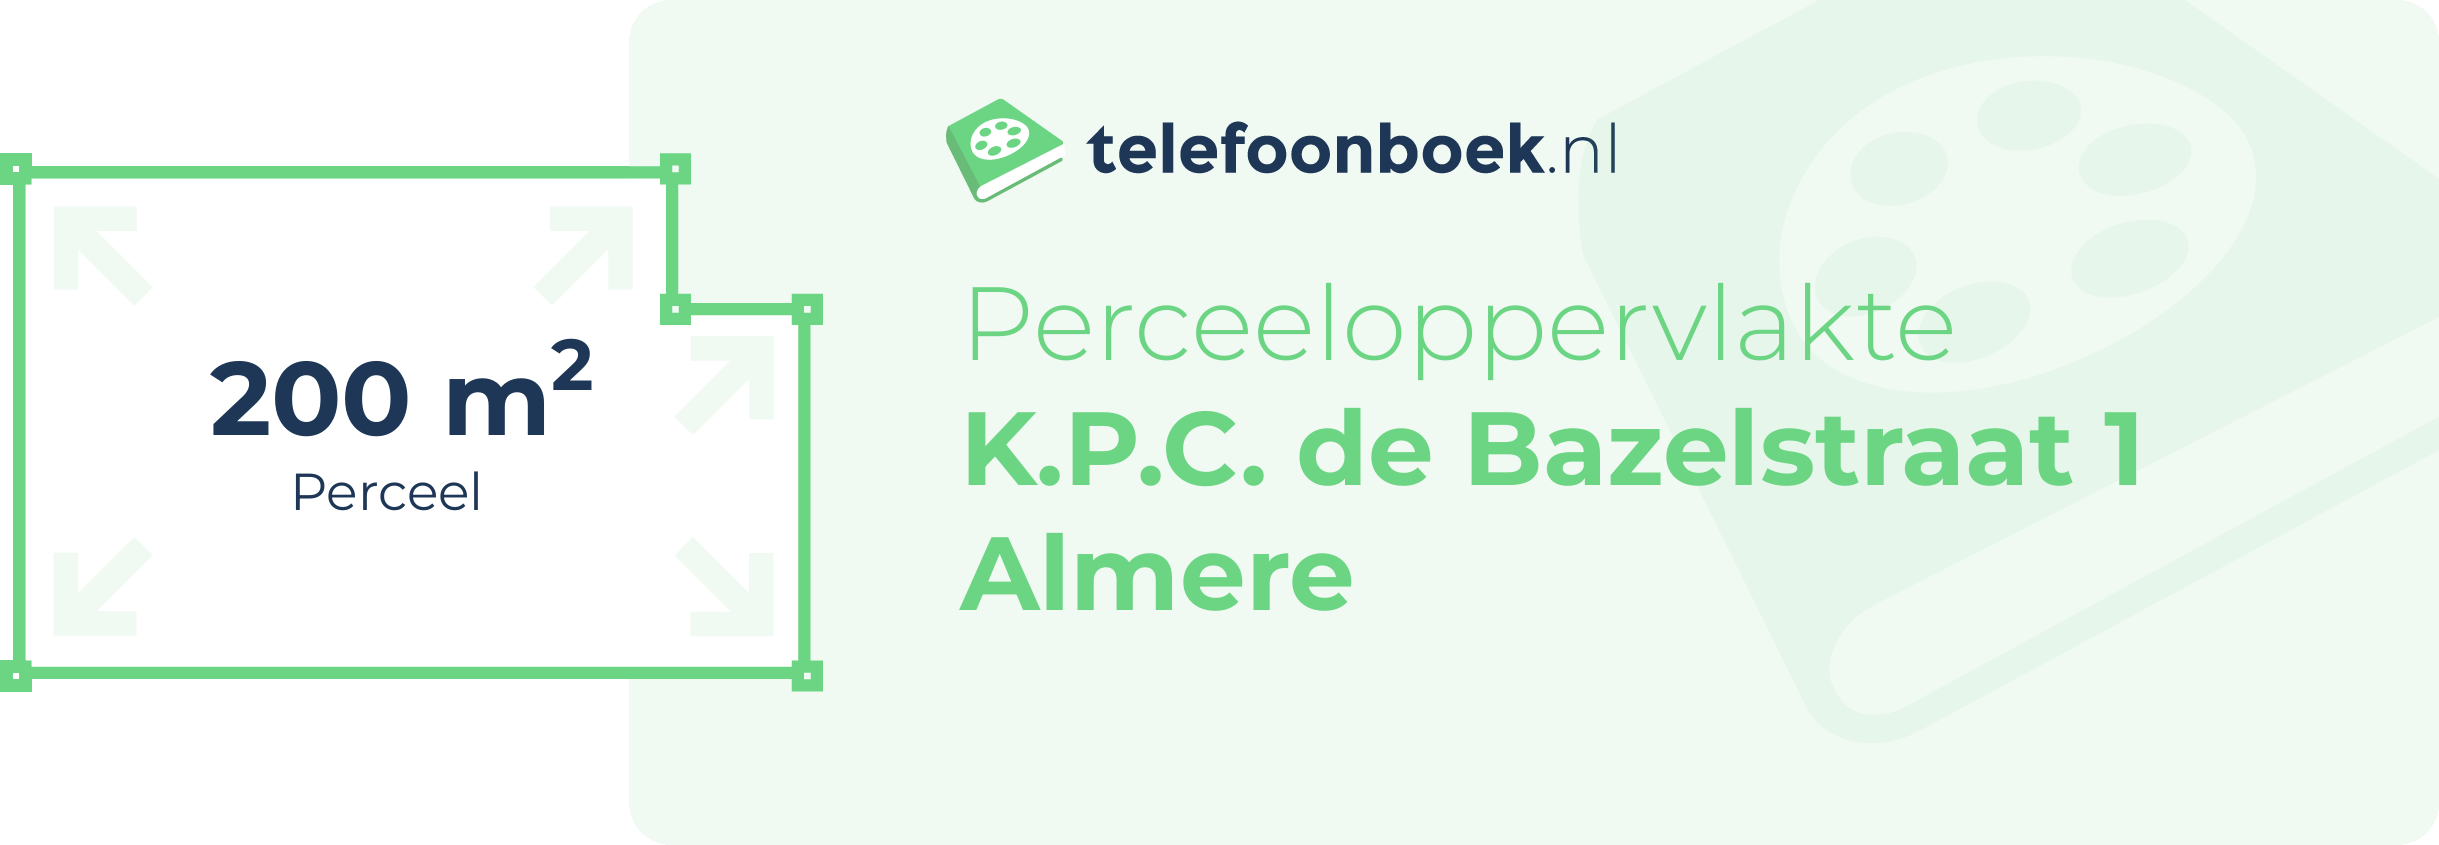 Perceeloppervlakte K.P.C. De Bazelstraat 1 Almere